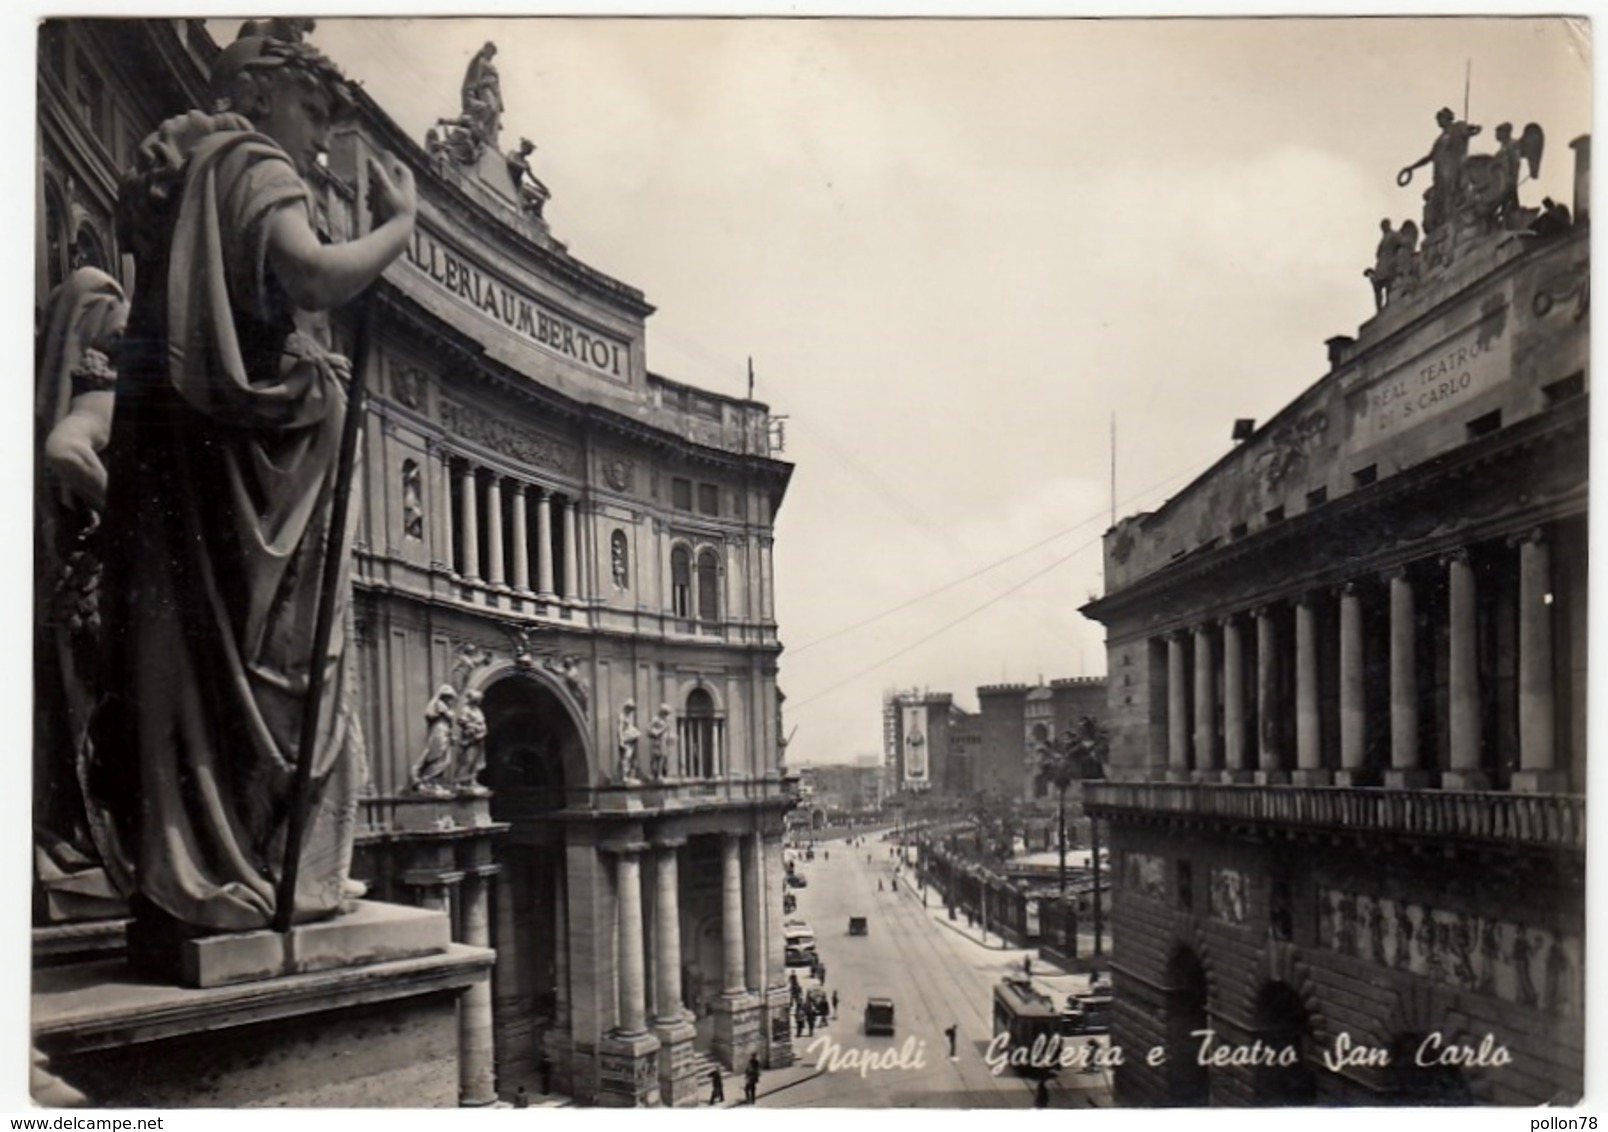 NAPOLI - GALLERIA E TEATRO SAN CARLO - 1949 - Napoli